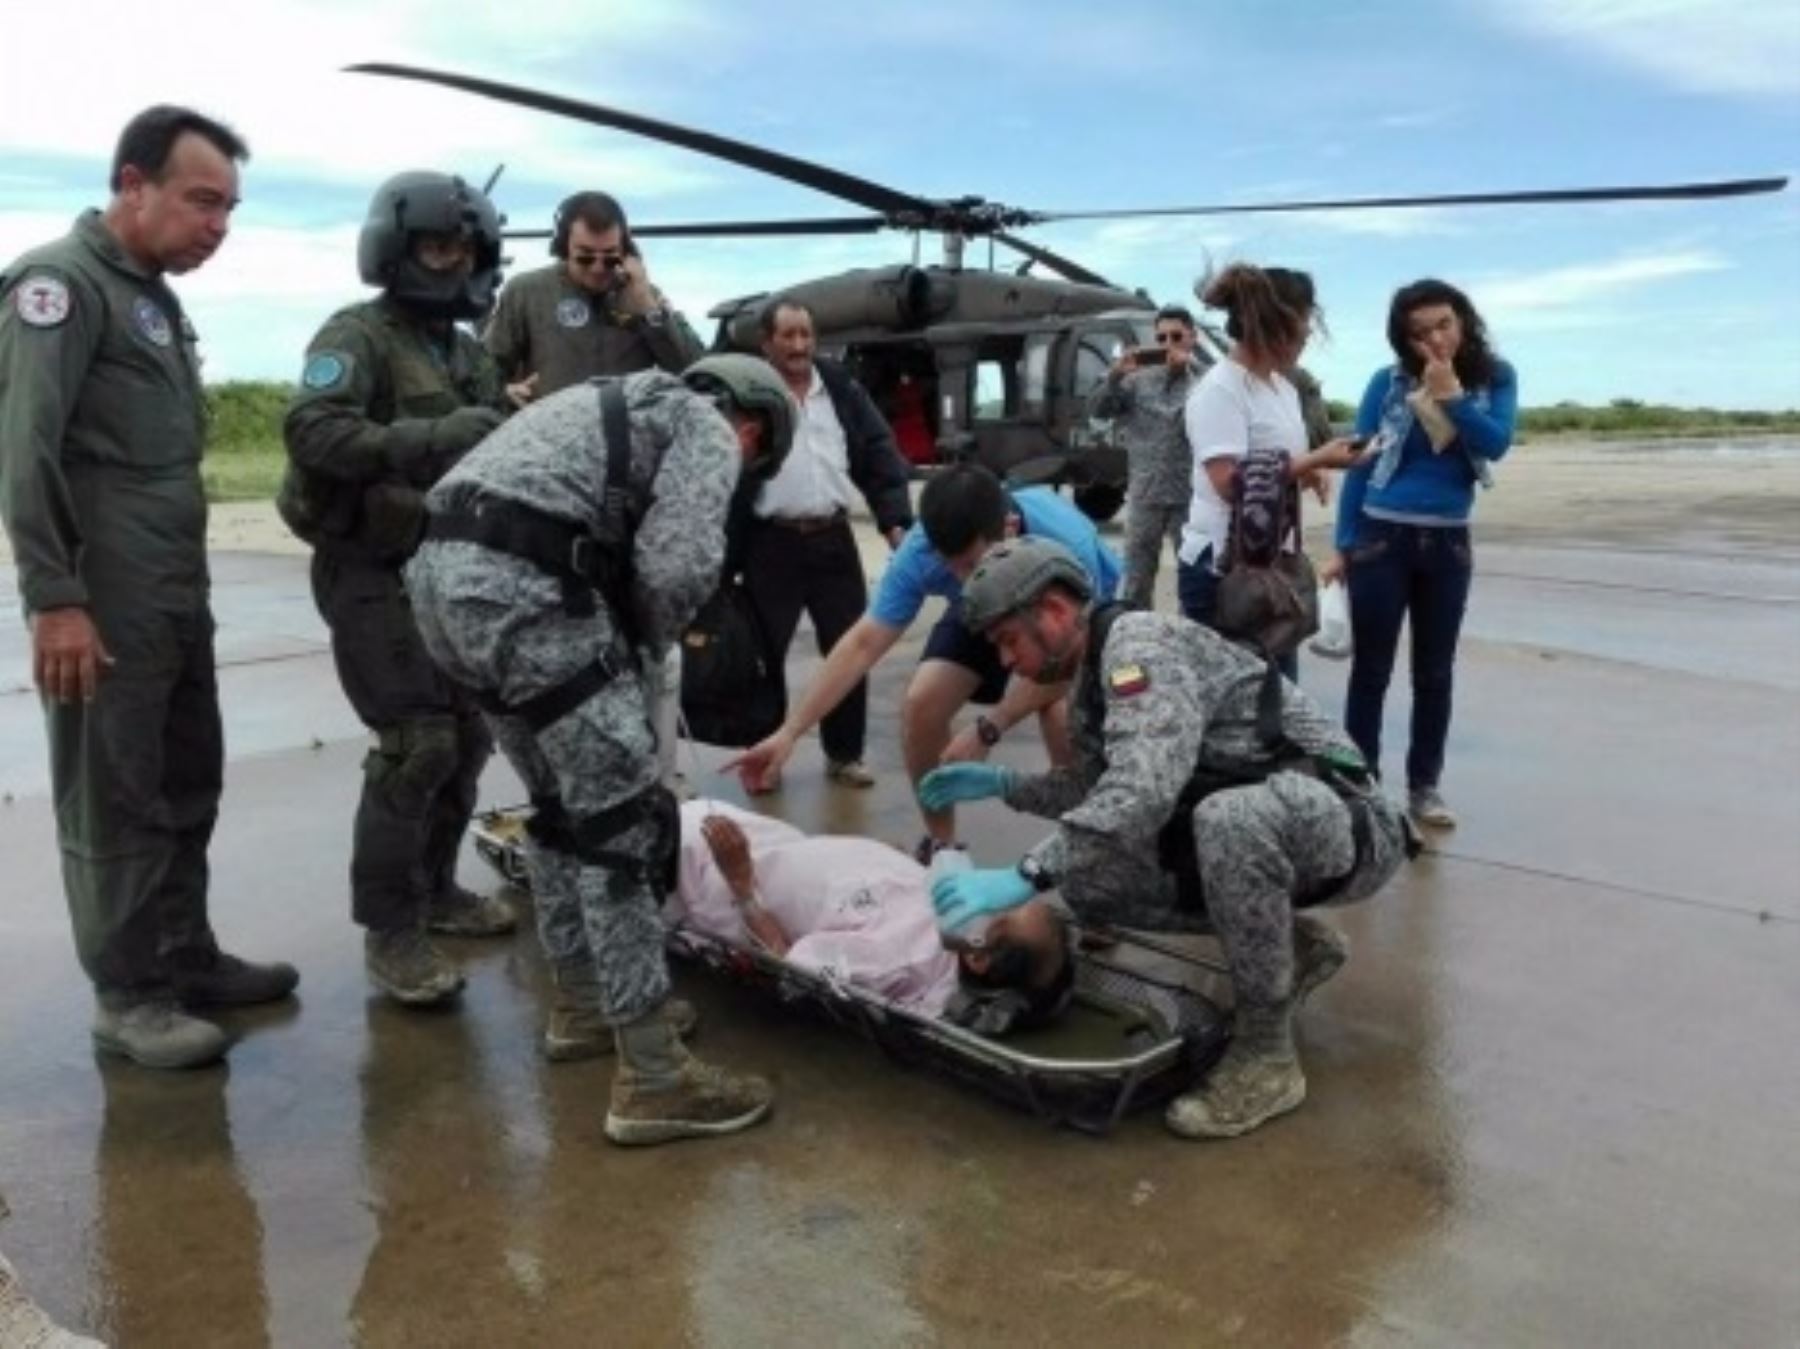 La invalorable labor humanitaria que vienen desplegando las fuerzas militares del hermano país de Colombia en apoyo al Perú en la atención de la población afectada por desastres naturales en regiones del norte, se evidencia en más de 70 horas de vuelo y 447 personas rescatadas hasta ahora.